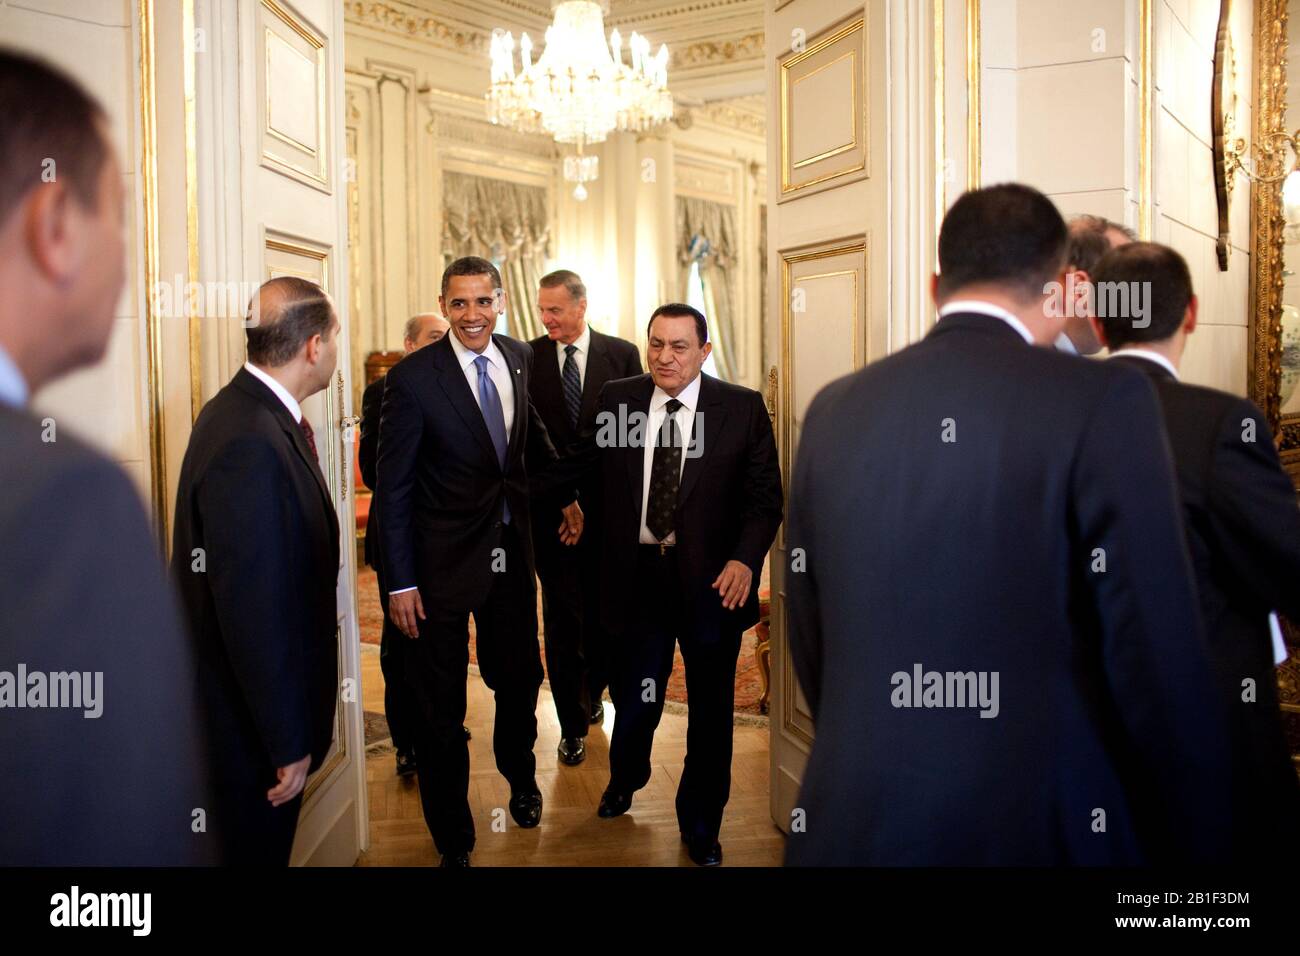 Cairo, Egypt  - June 4, 2009 -- United States President Barack Obama meets with Egyptian President Hosni Mubarak of Egypt in Cairo, Egypt, Thursday, June 4, 2009. .Mandatory Credit: Pete Souza - White House via CNP /MediaPunch Stock Photo